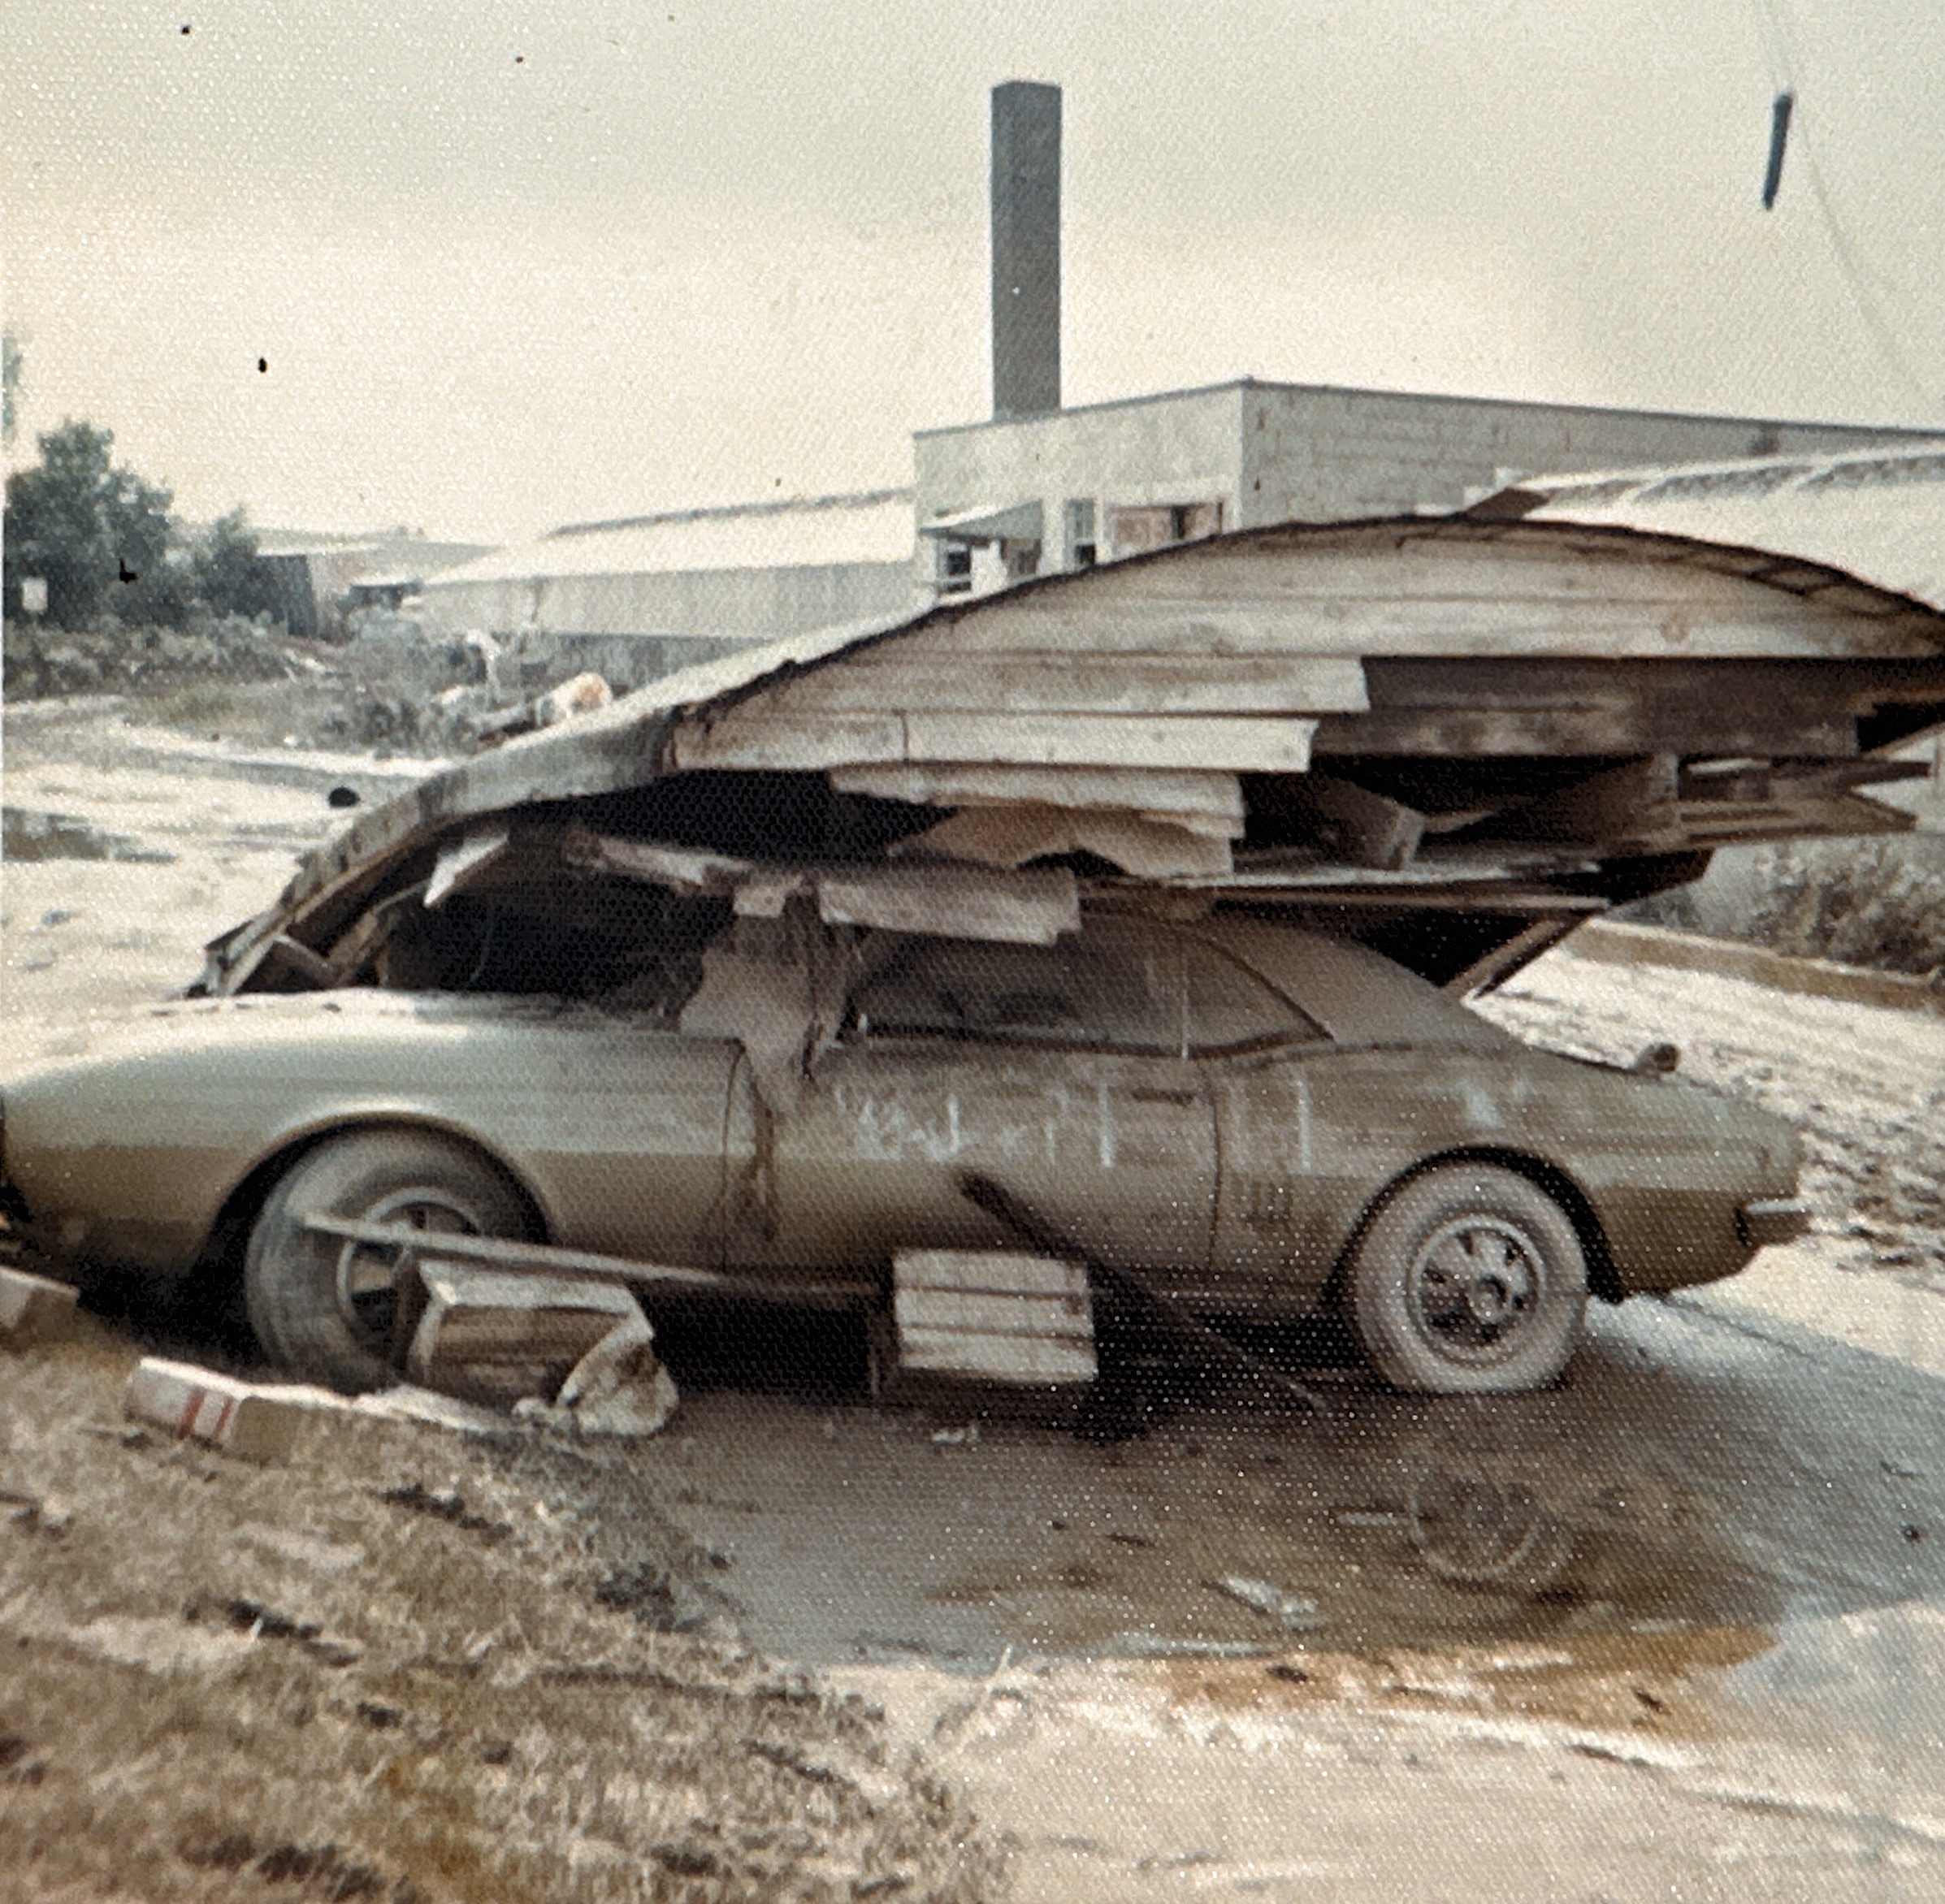 Wayne’s car after flood of 1972.